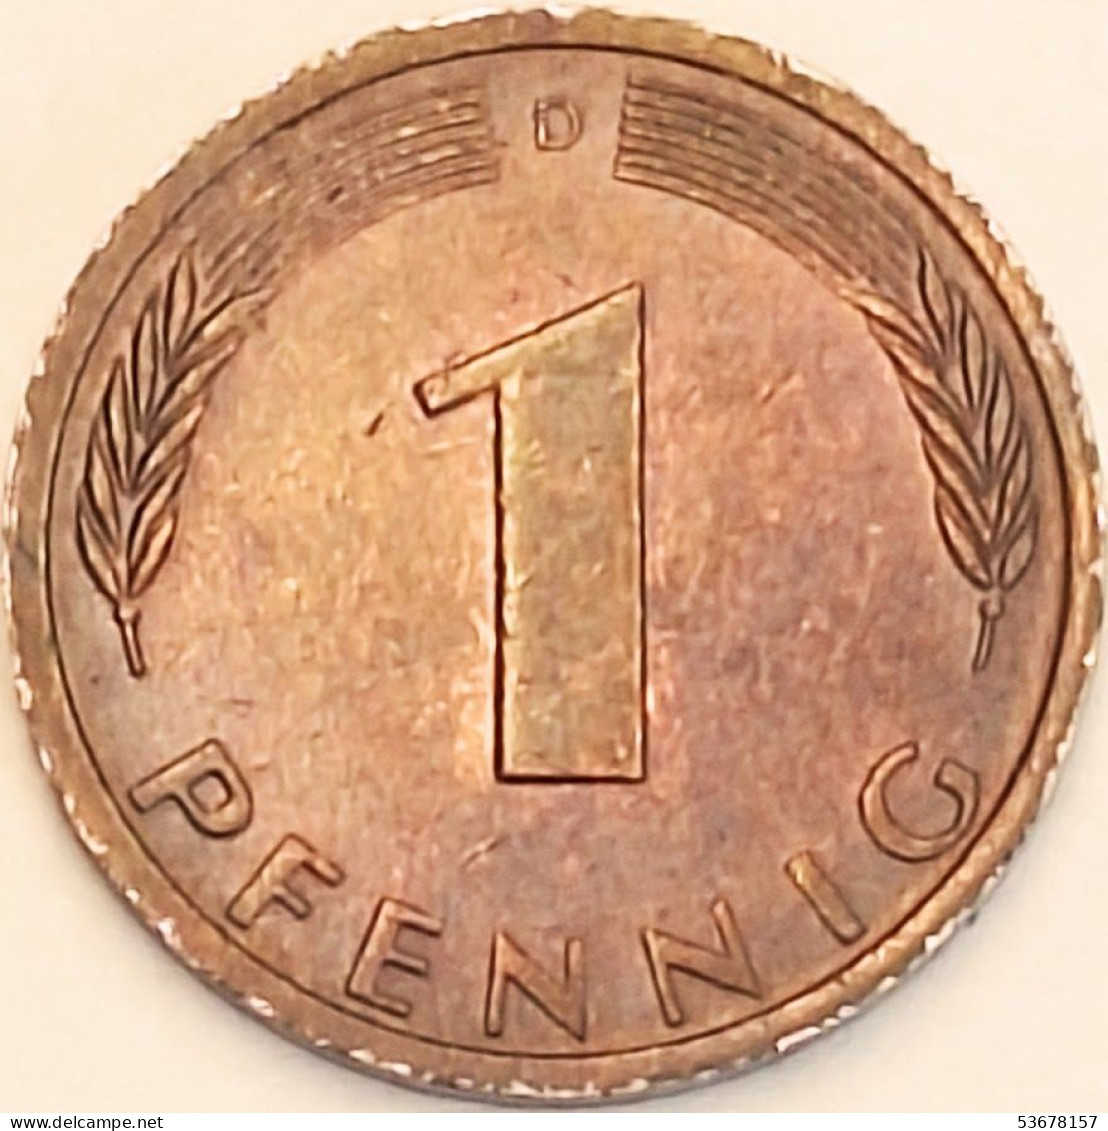 Germany Federal Republic - Pfennig 1971 D, KM# 105 (#4456) - 1 Pfennig